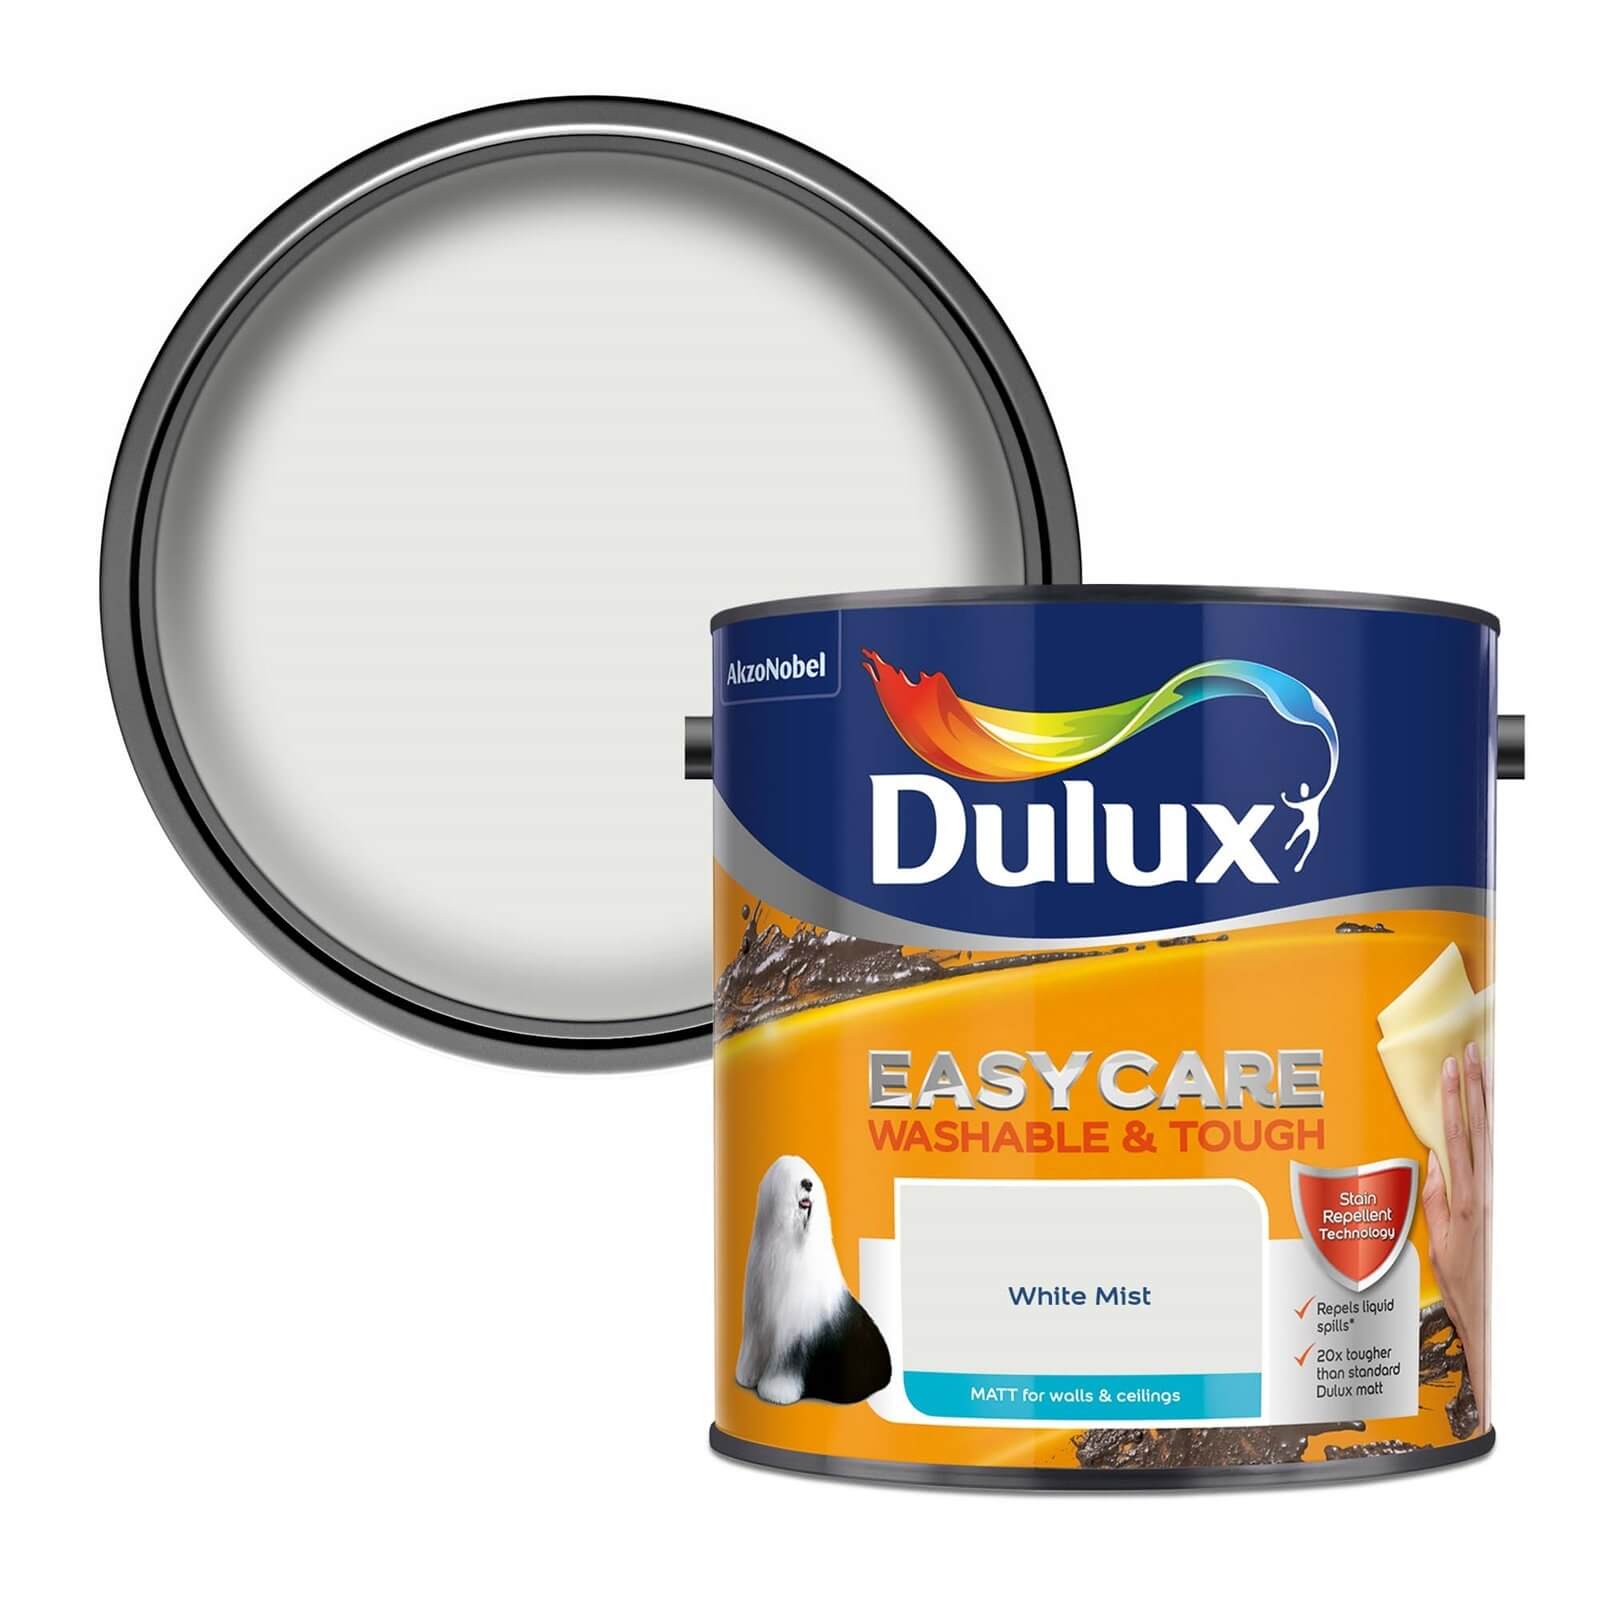 Dulux Easycare Washable & Tough Matt Paint White Mist - 2.5L